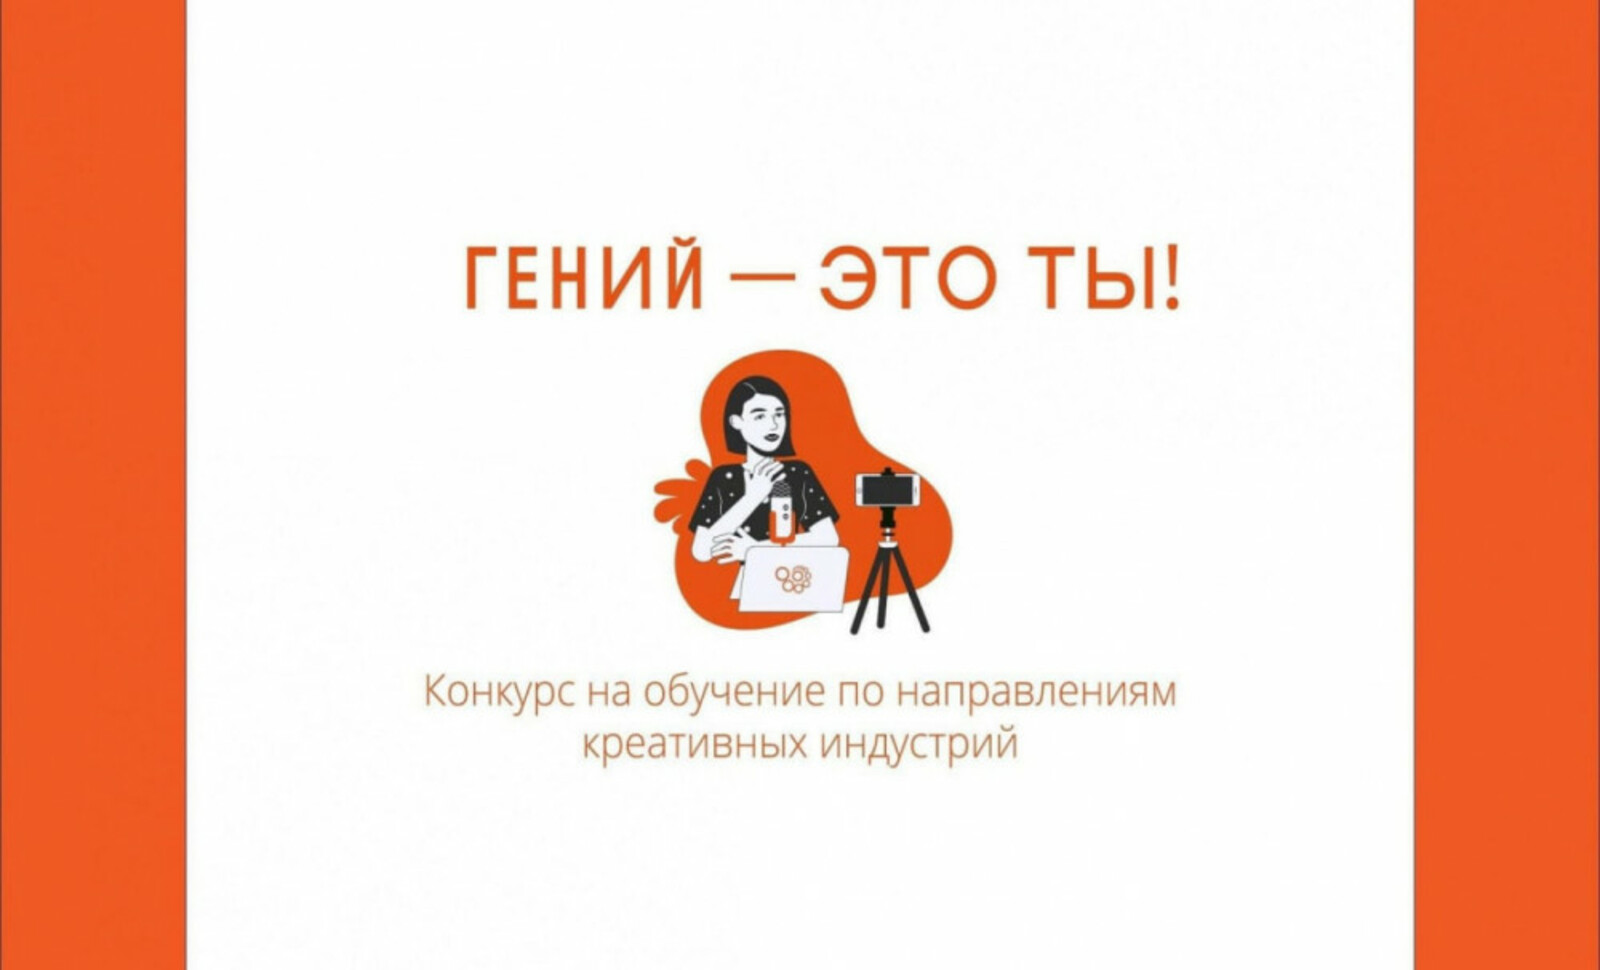 Модельные библиотеки Башкортостана стали победителями проекта «Гений места»